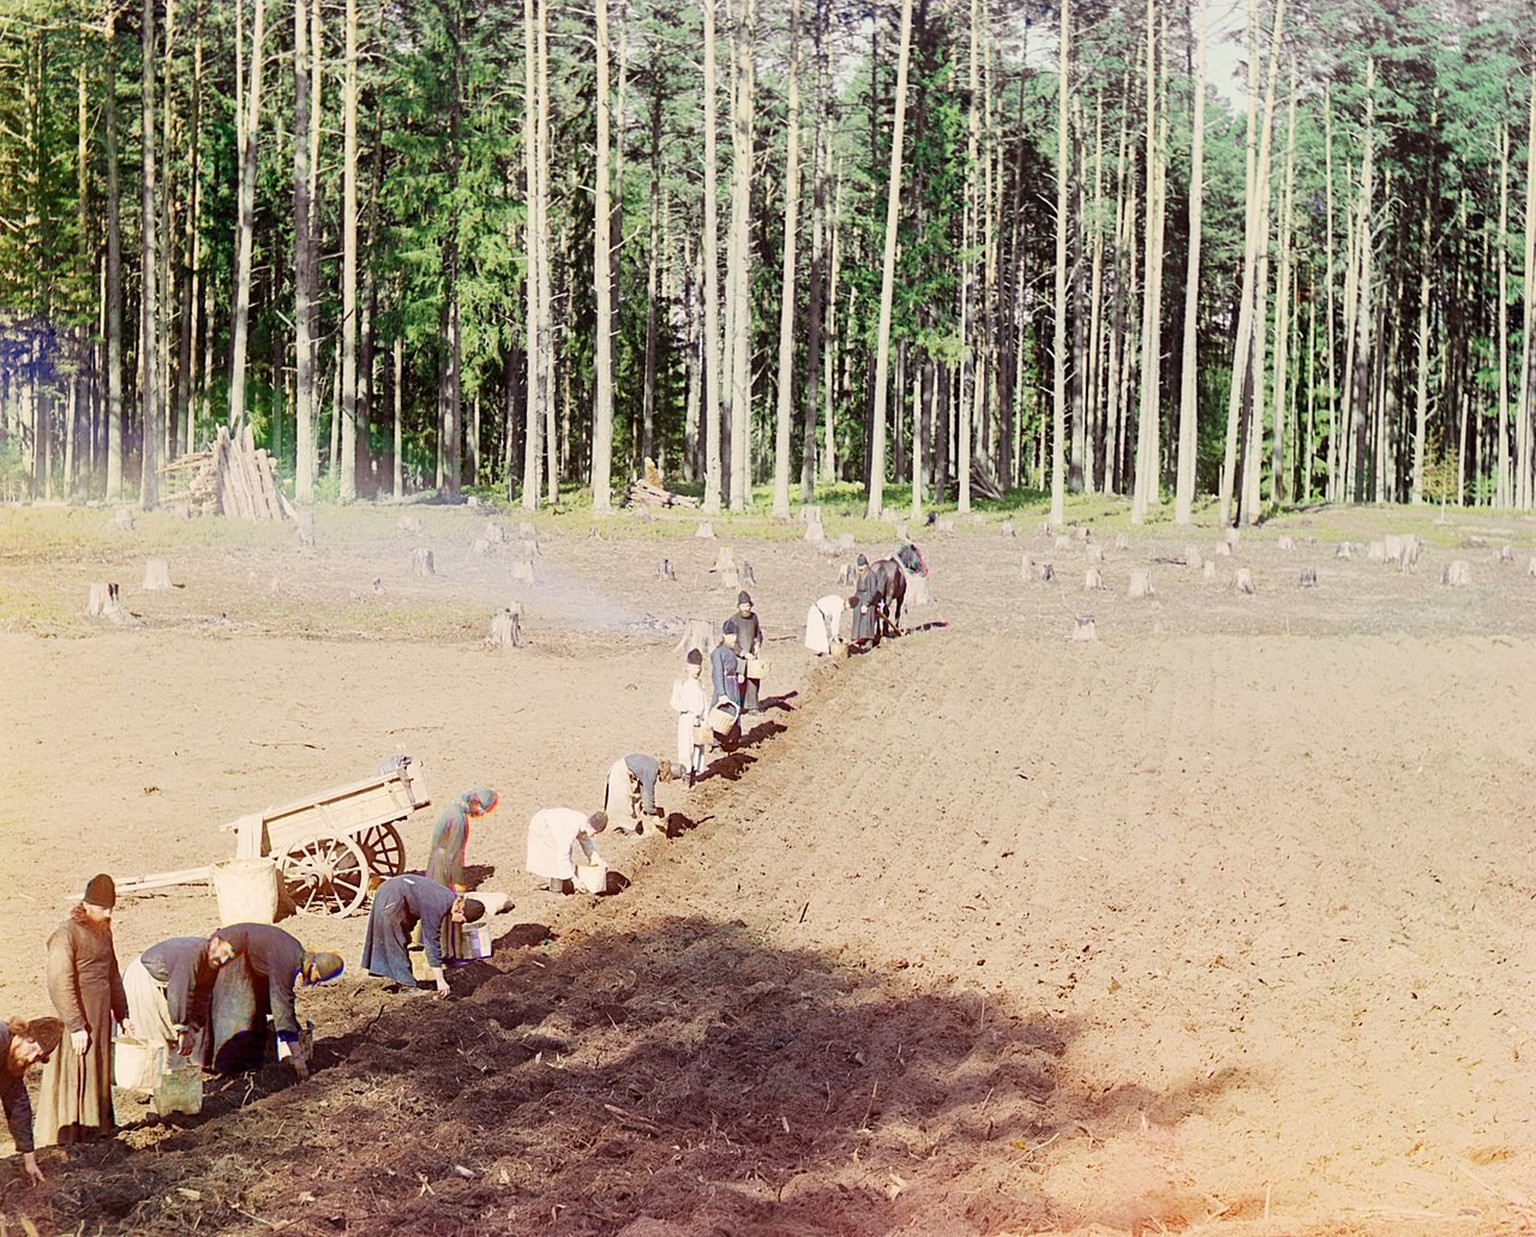 Kartoffelanbau, ca. 1910, Russisches Kaiserreich
https://de.wikipedia.org/wiki/Kartoffel#/media/Datei:Prokudin-Gorskii-39.jpg